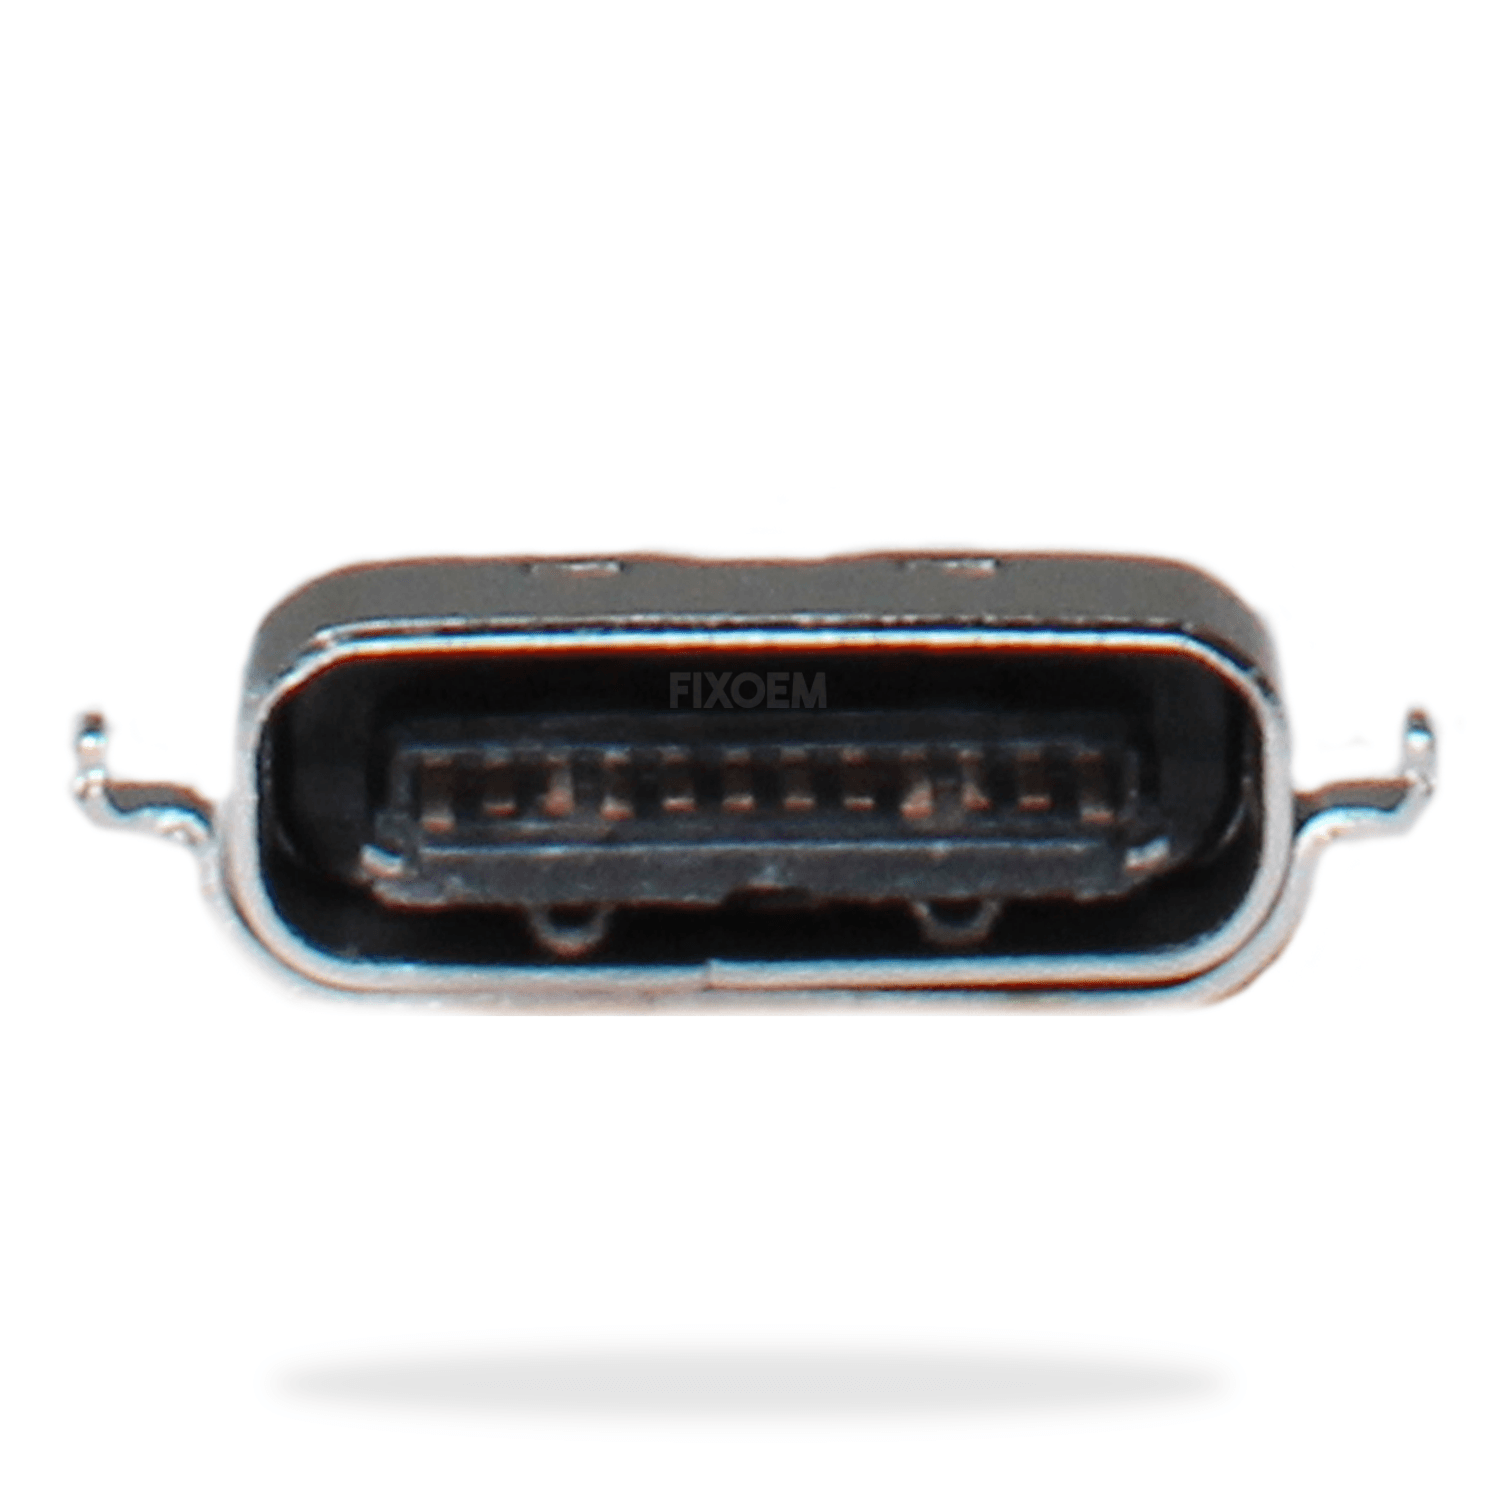 Pin Carga Moto G50 5Pz Xt2149-1 a solo $ 15.00 Refaccion y puestos celulares, refurbish y microelectronica.- FixOEM